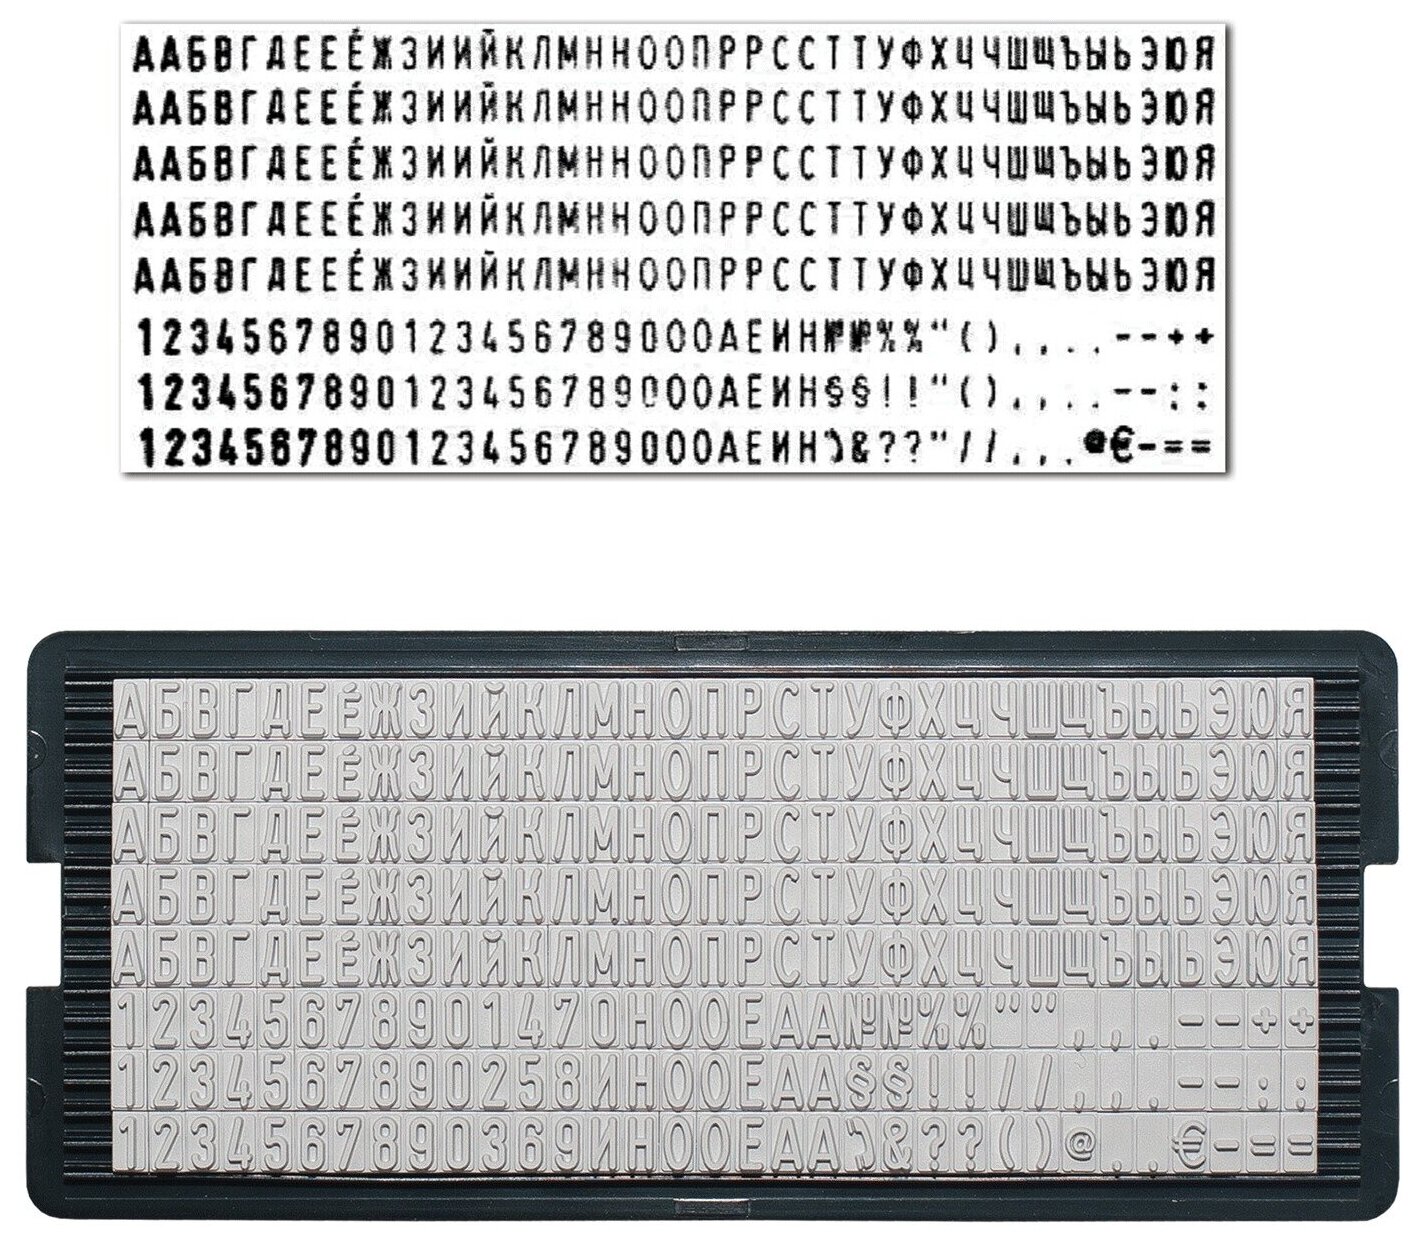 Trodat 6004 касса русских букв и цифр для самонаборных печатей и штампов 264 символа шрифт 4 мм